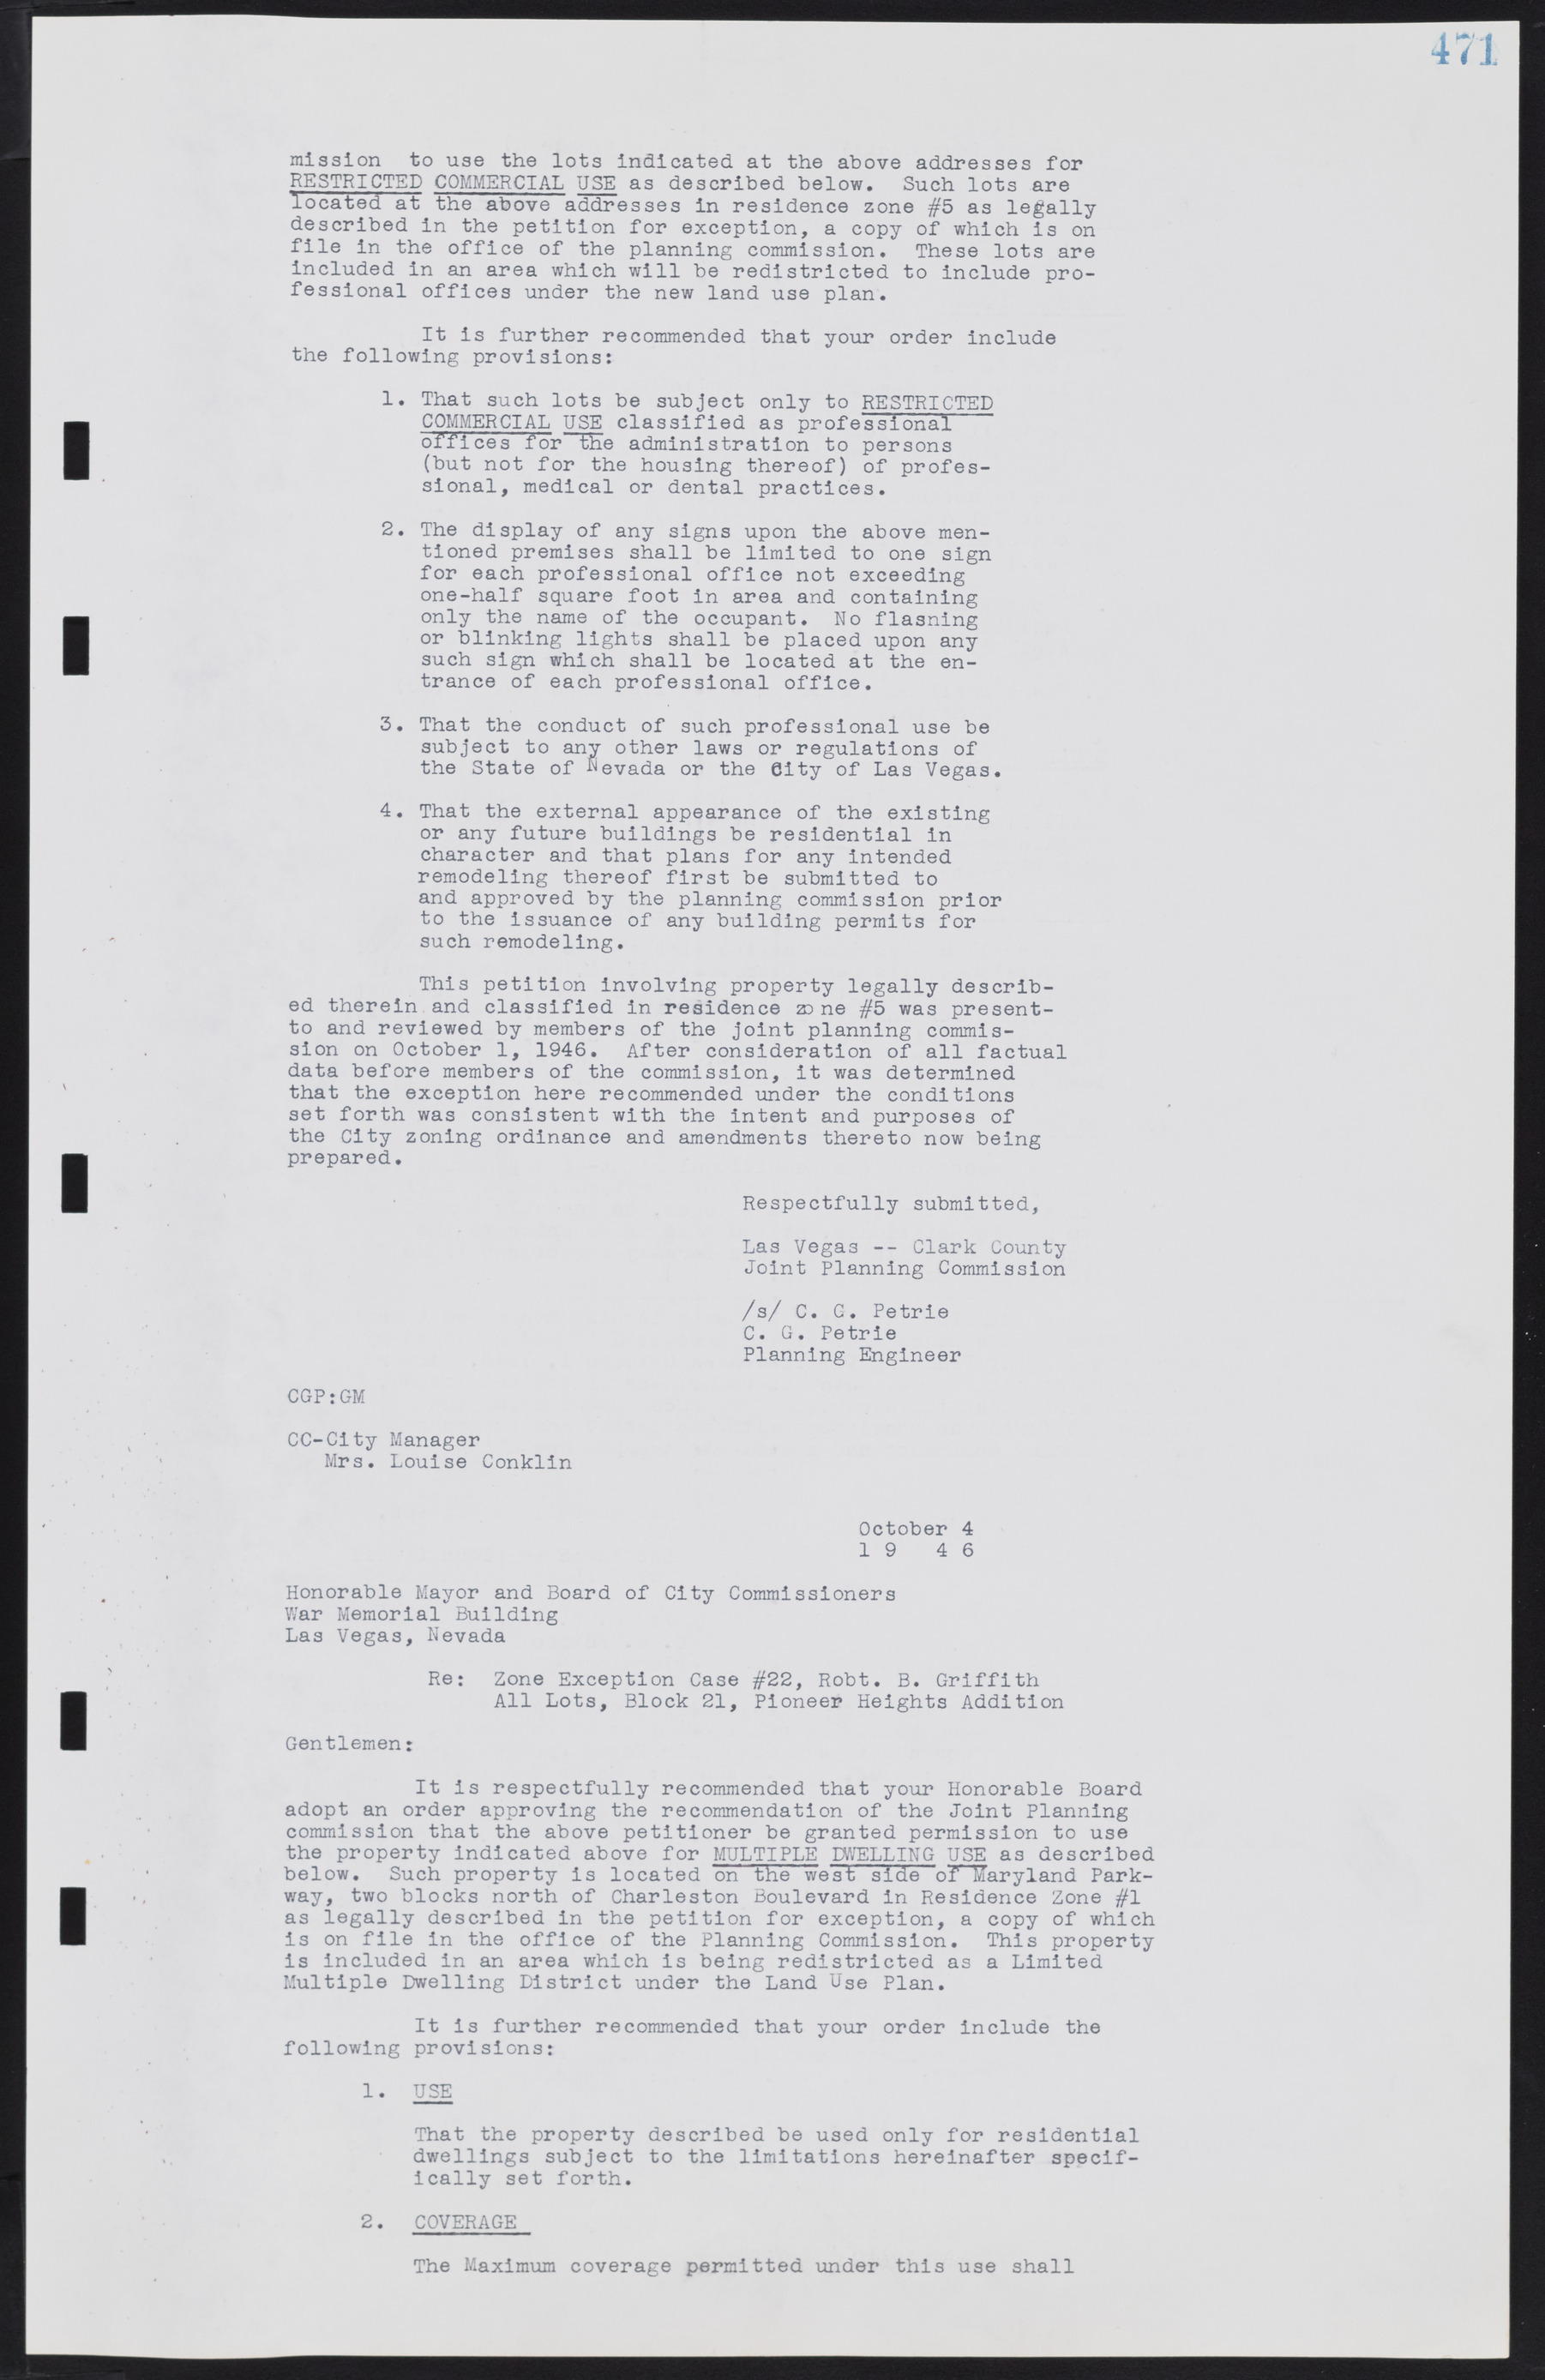 Las Vegas City Commission Minutes, August 11, 1942 to December 30, 1946, lvc000005-502